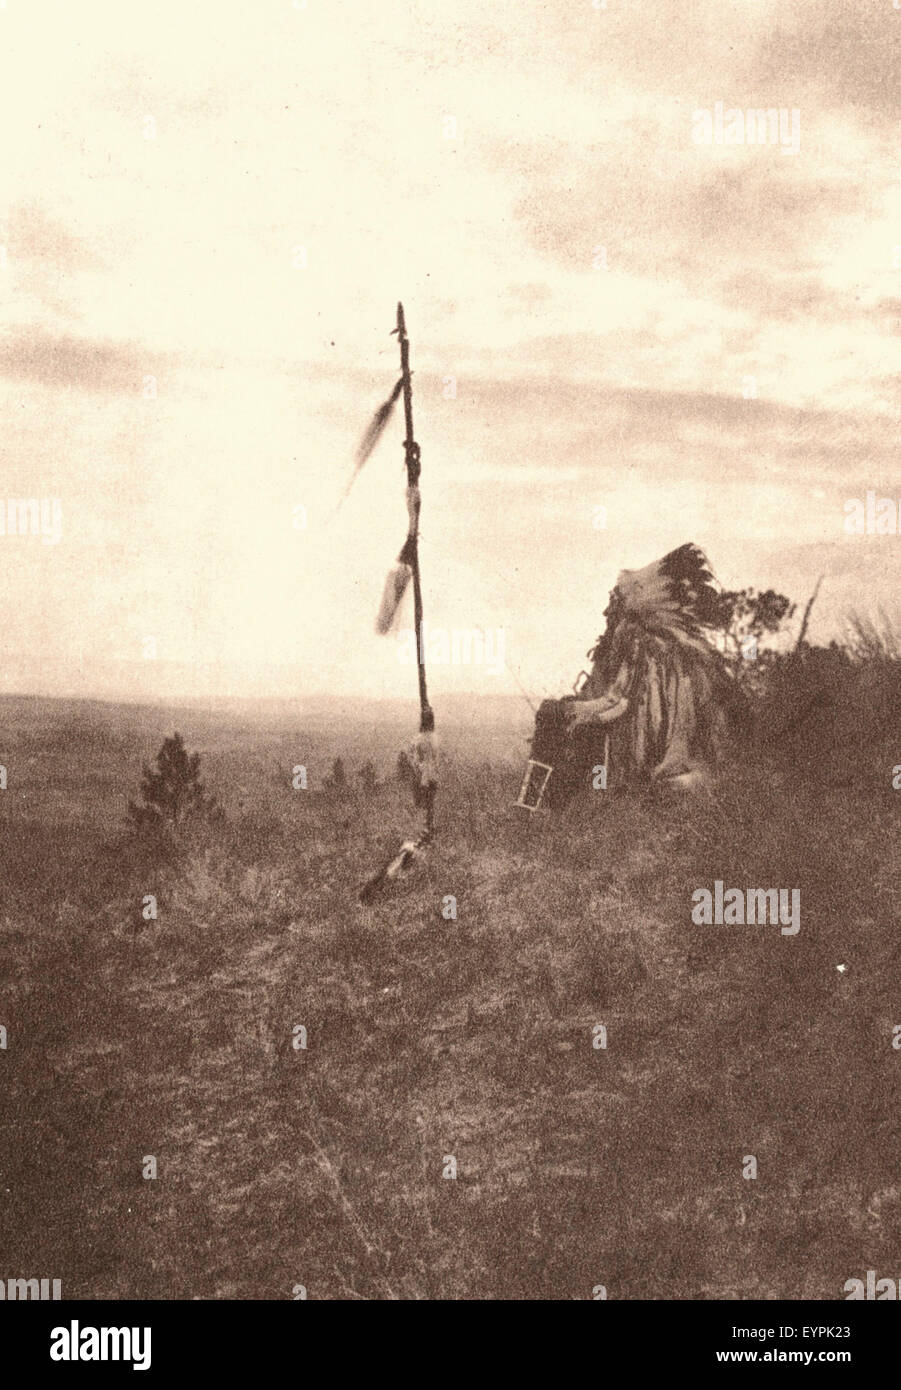 Ein Blick auf rückwärts - Indianer in einem Feld Stockfoto